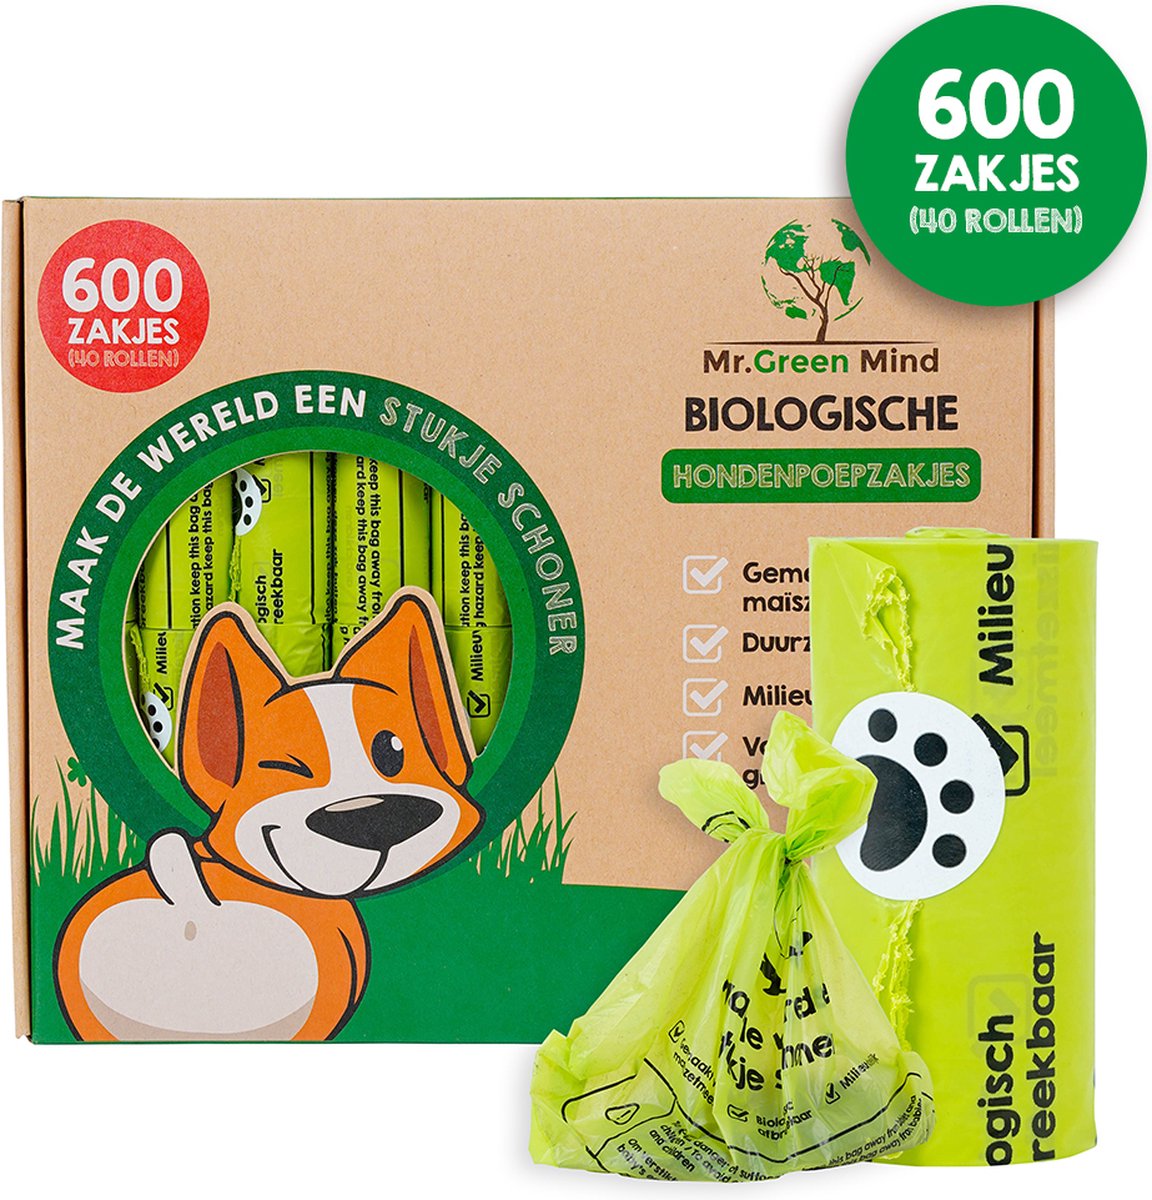 Mr. Green Mind Poepzakjes 600 stuks lekvrije Hondenpoepzakjes Biologisch Afbreekbaar - 40 rollen - Hond - Mr. Green Mind